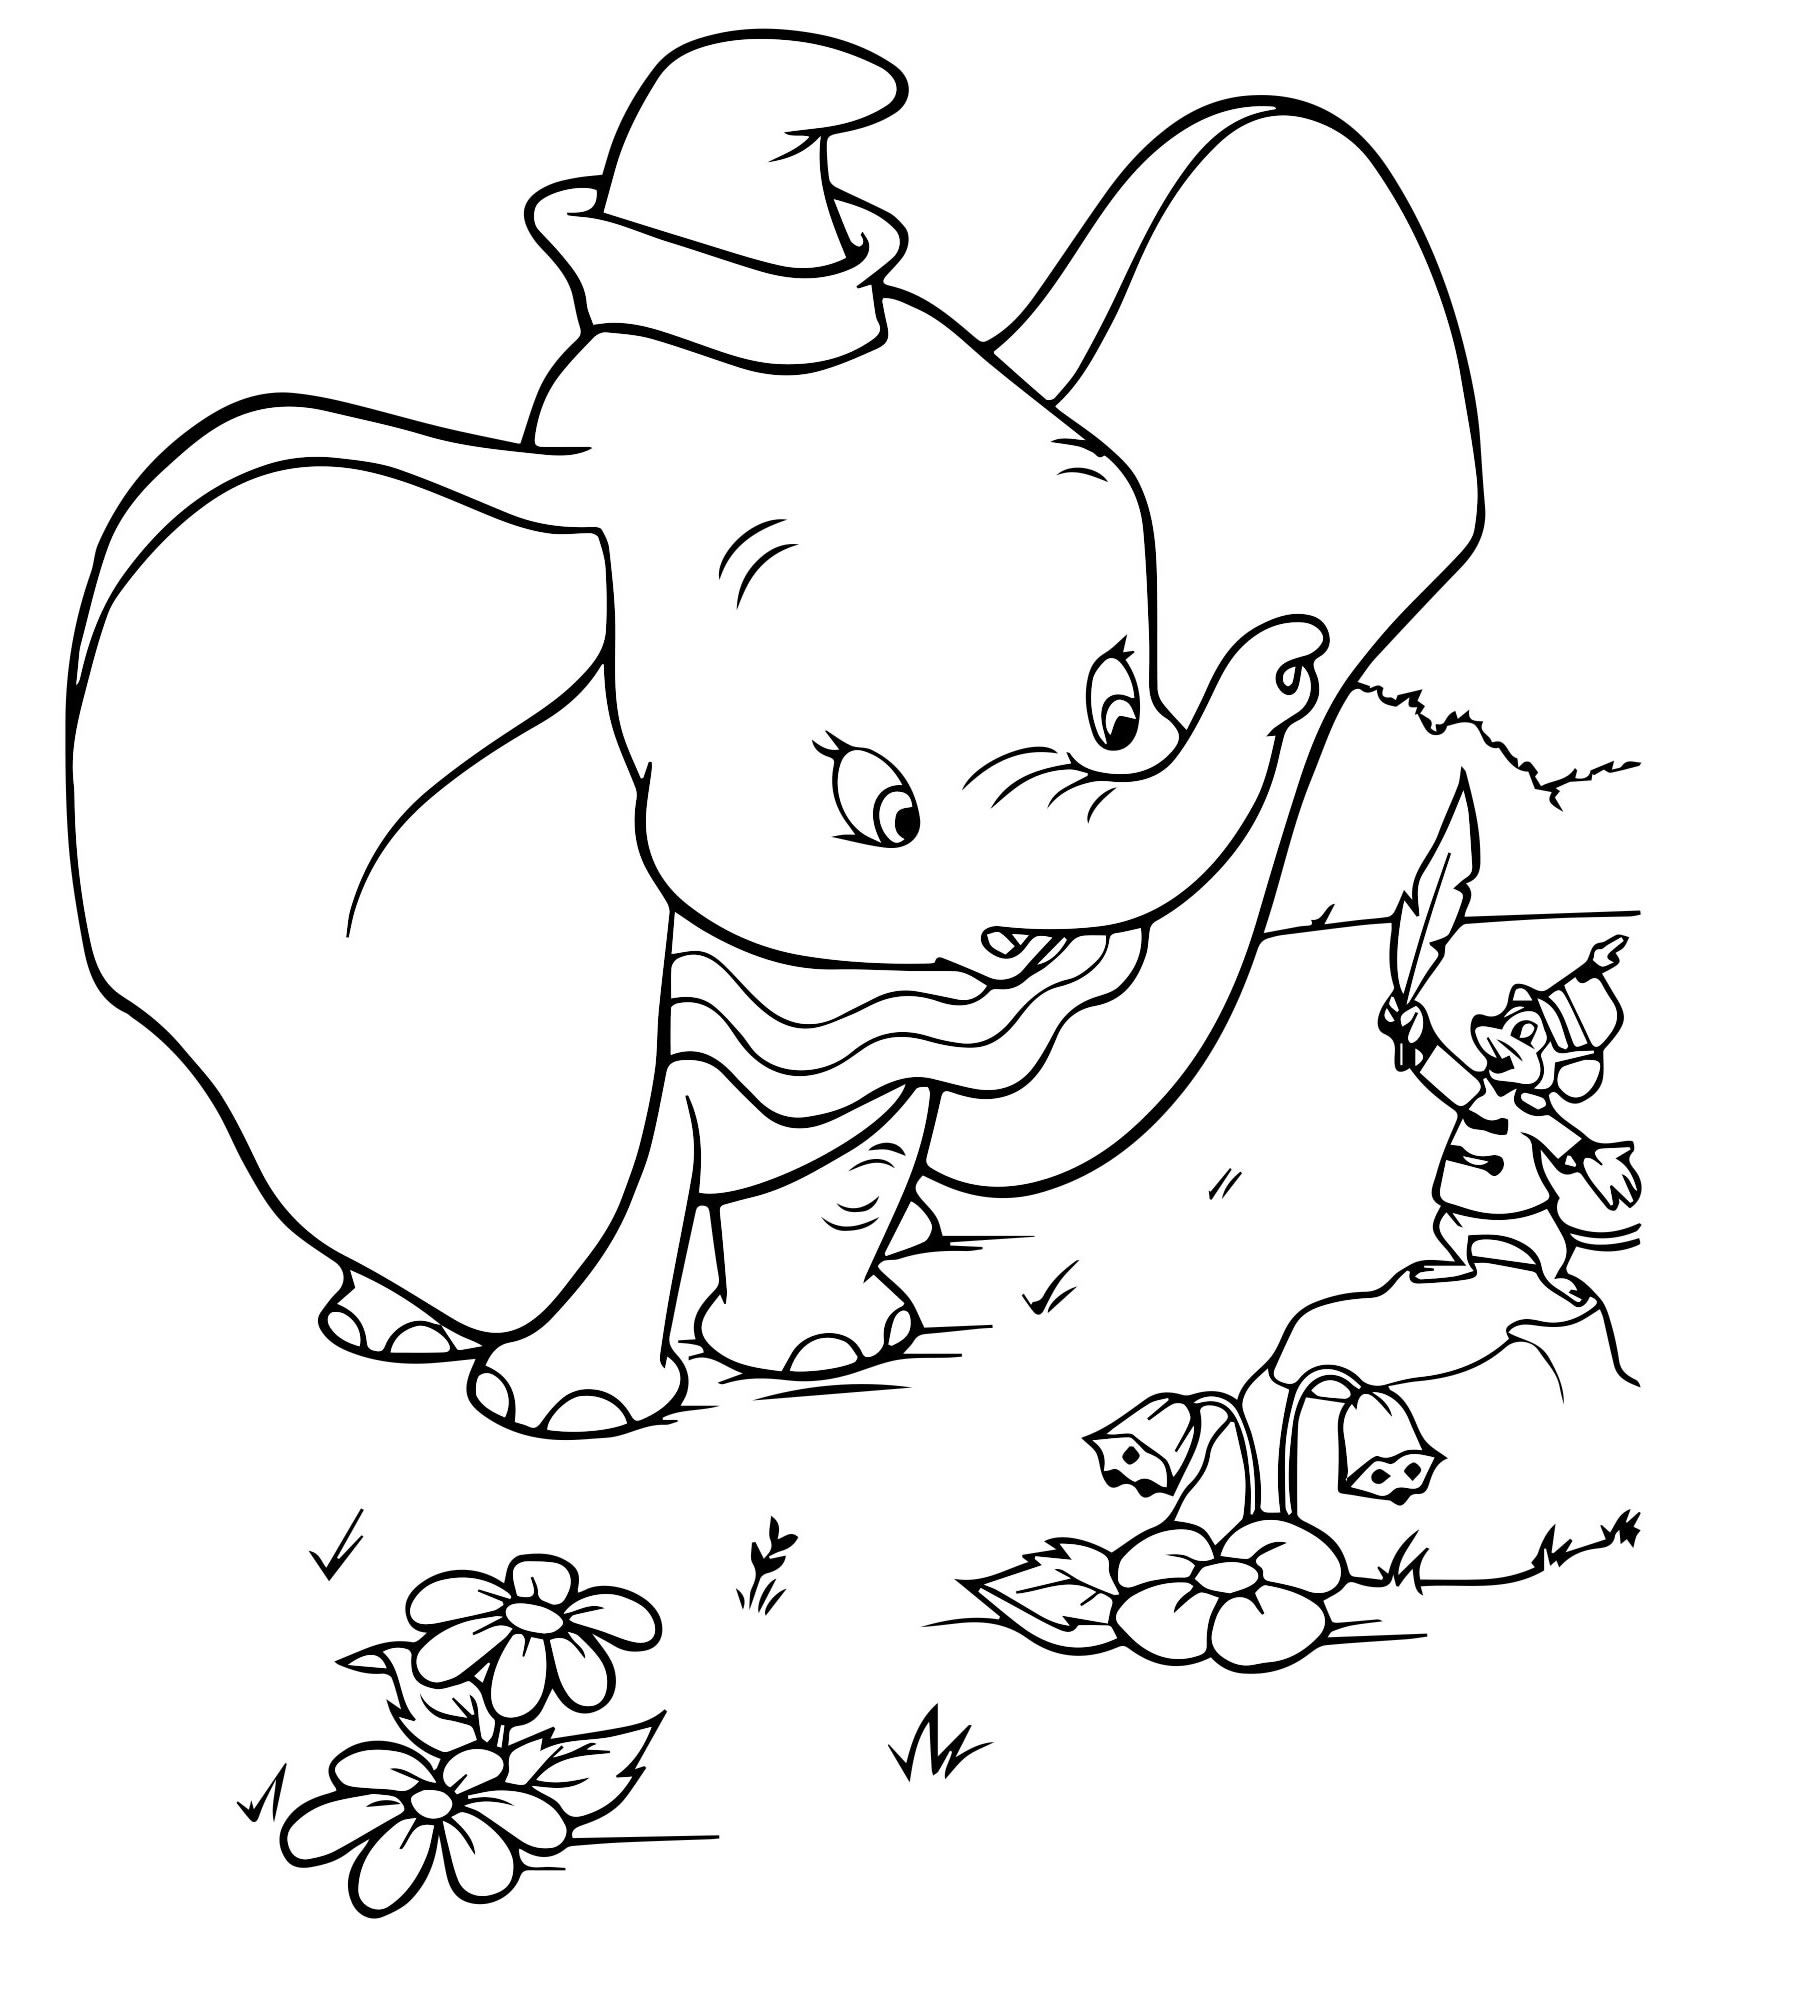 Дамбо и мышонок раскраска для детей